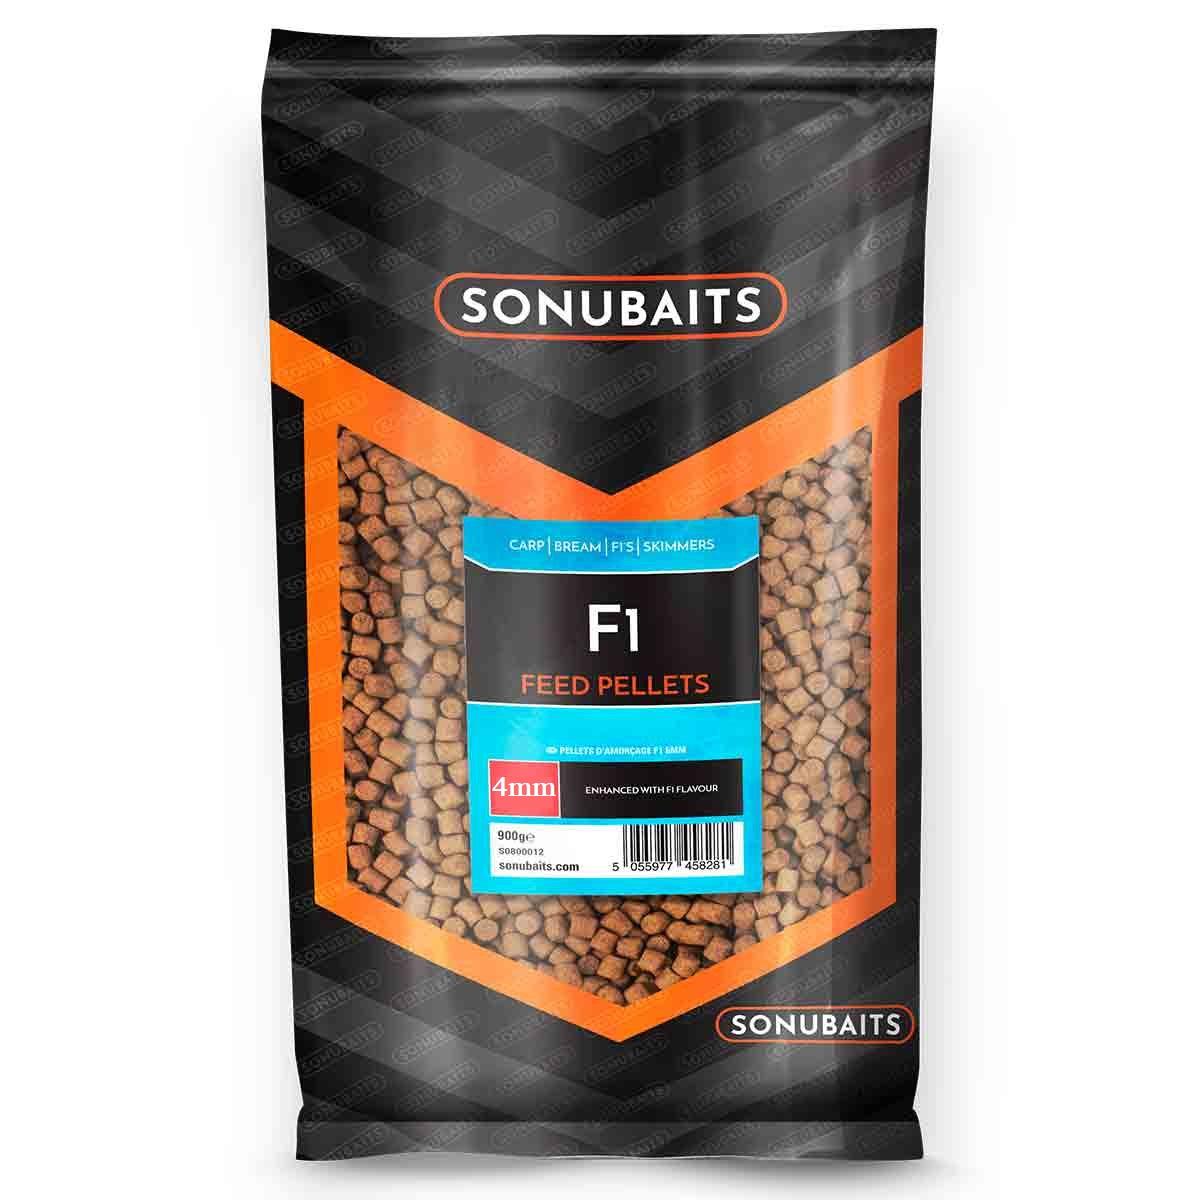 Sonubaits Feed Pellets F1 4mm